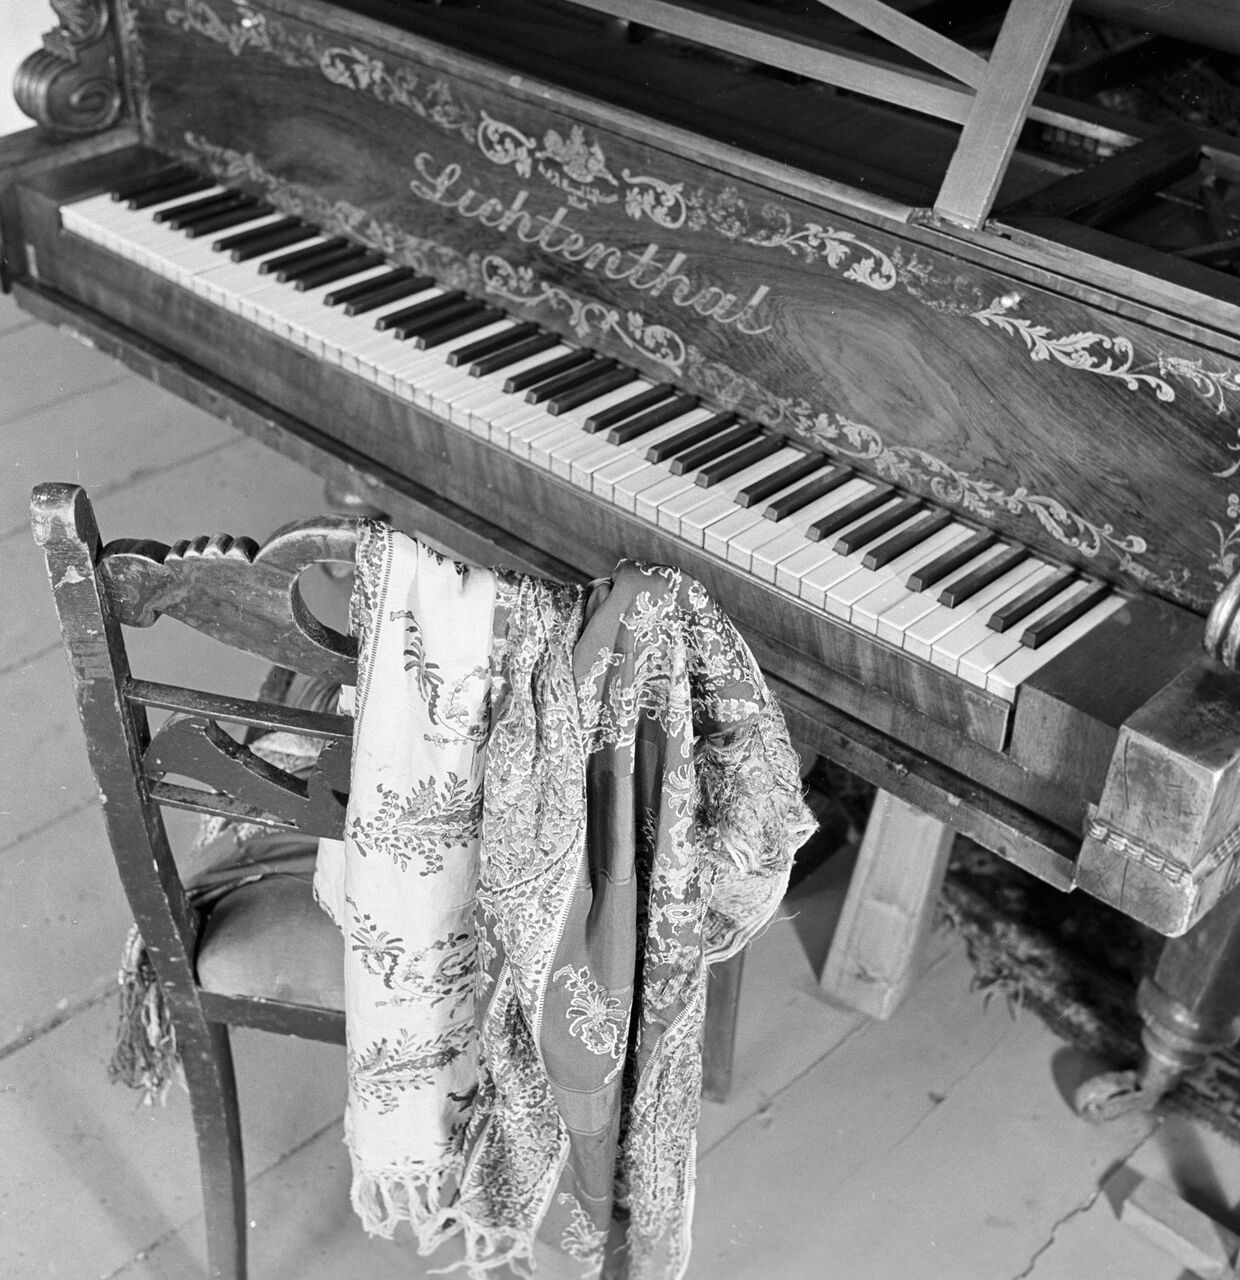 Шаль княгини Волконской возле фортепиано в Доме-музее декабристов